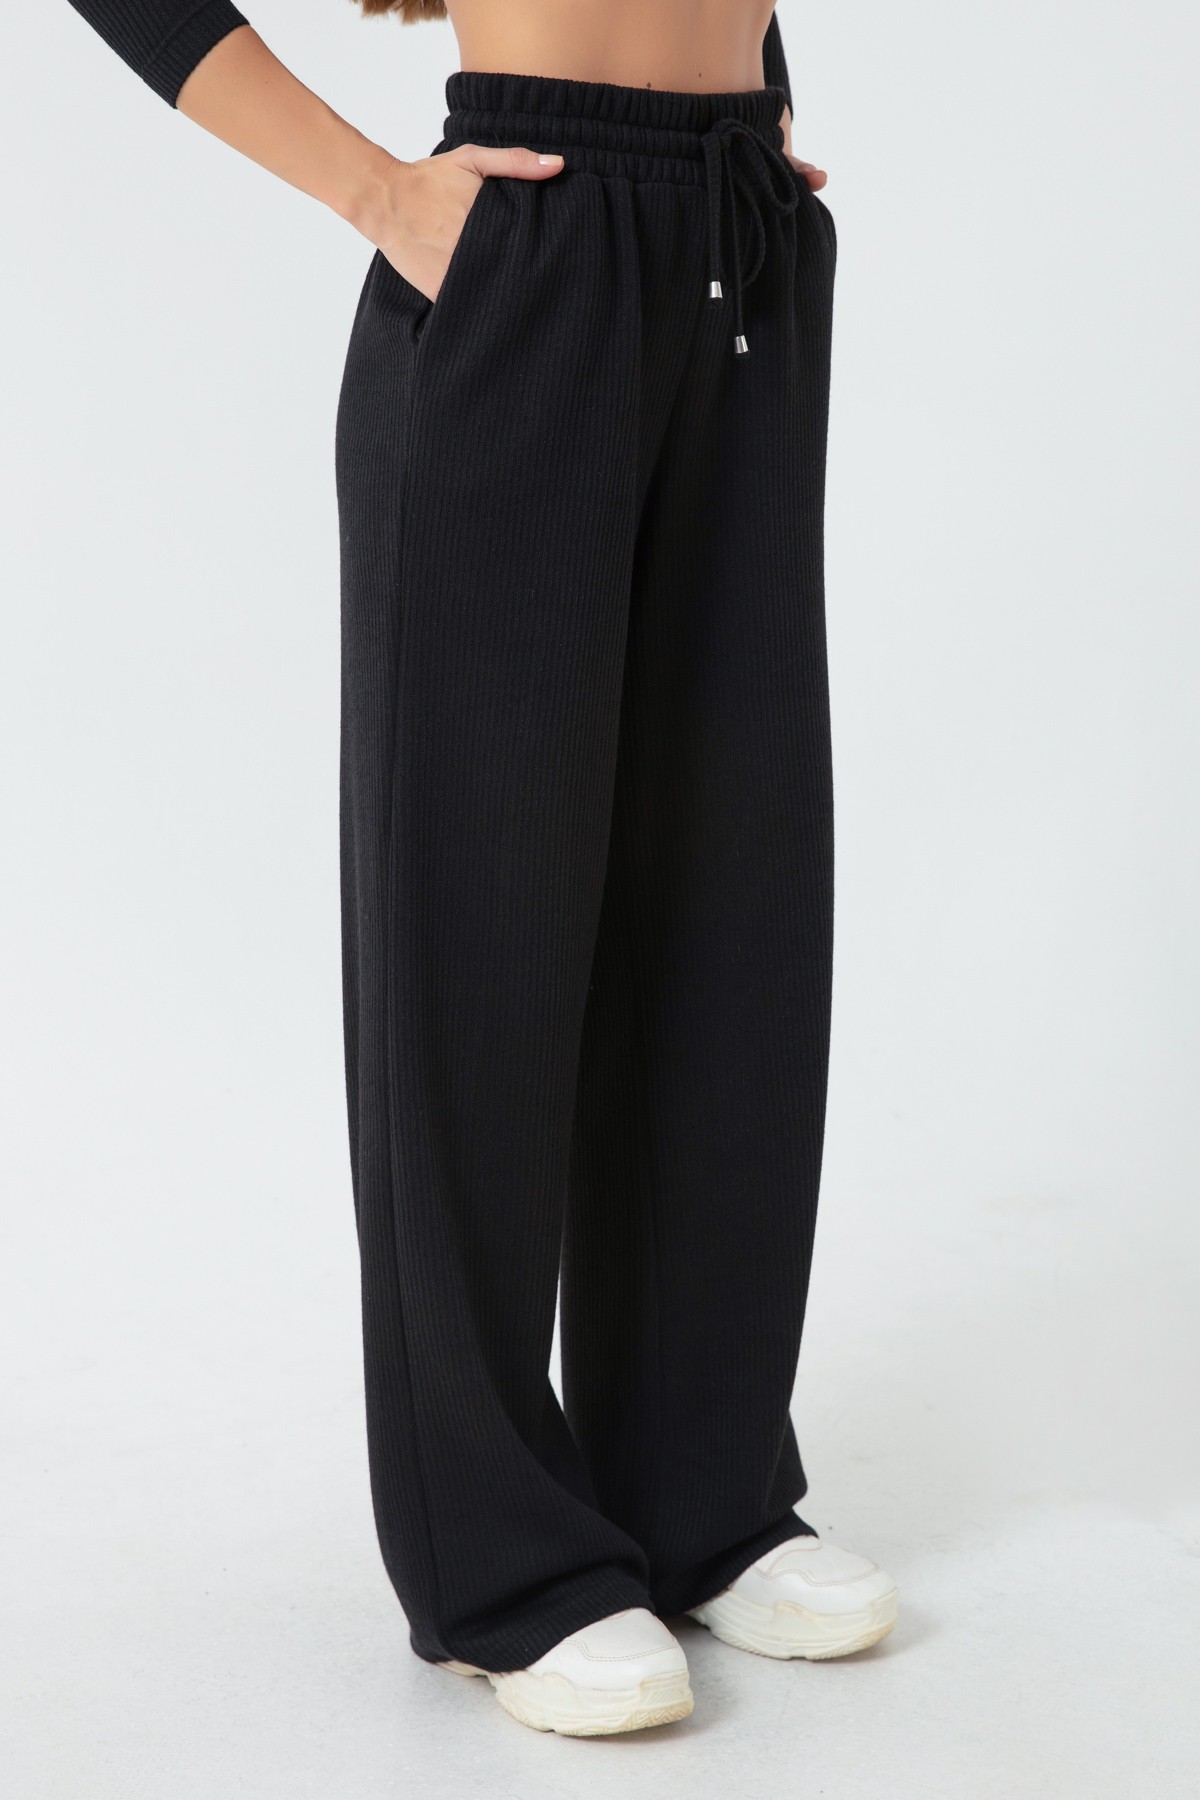 Kadın Beli Lastikli Örme Pantolon - Siyah